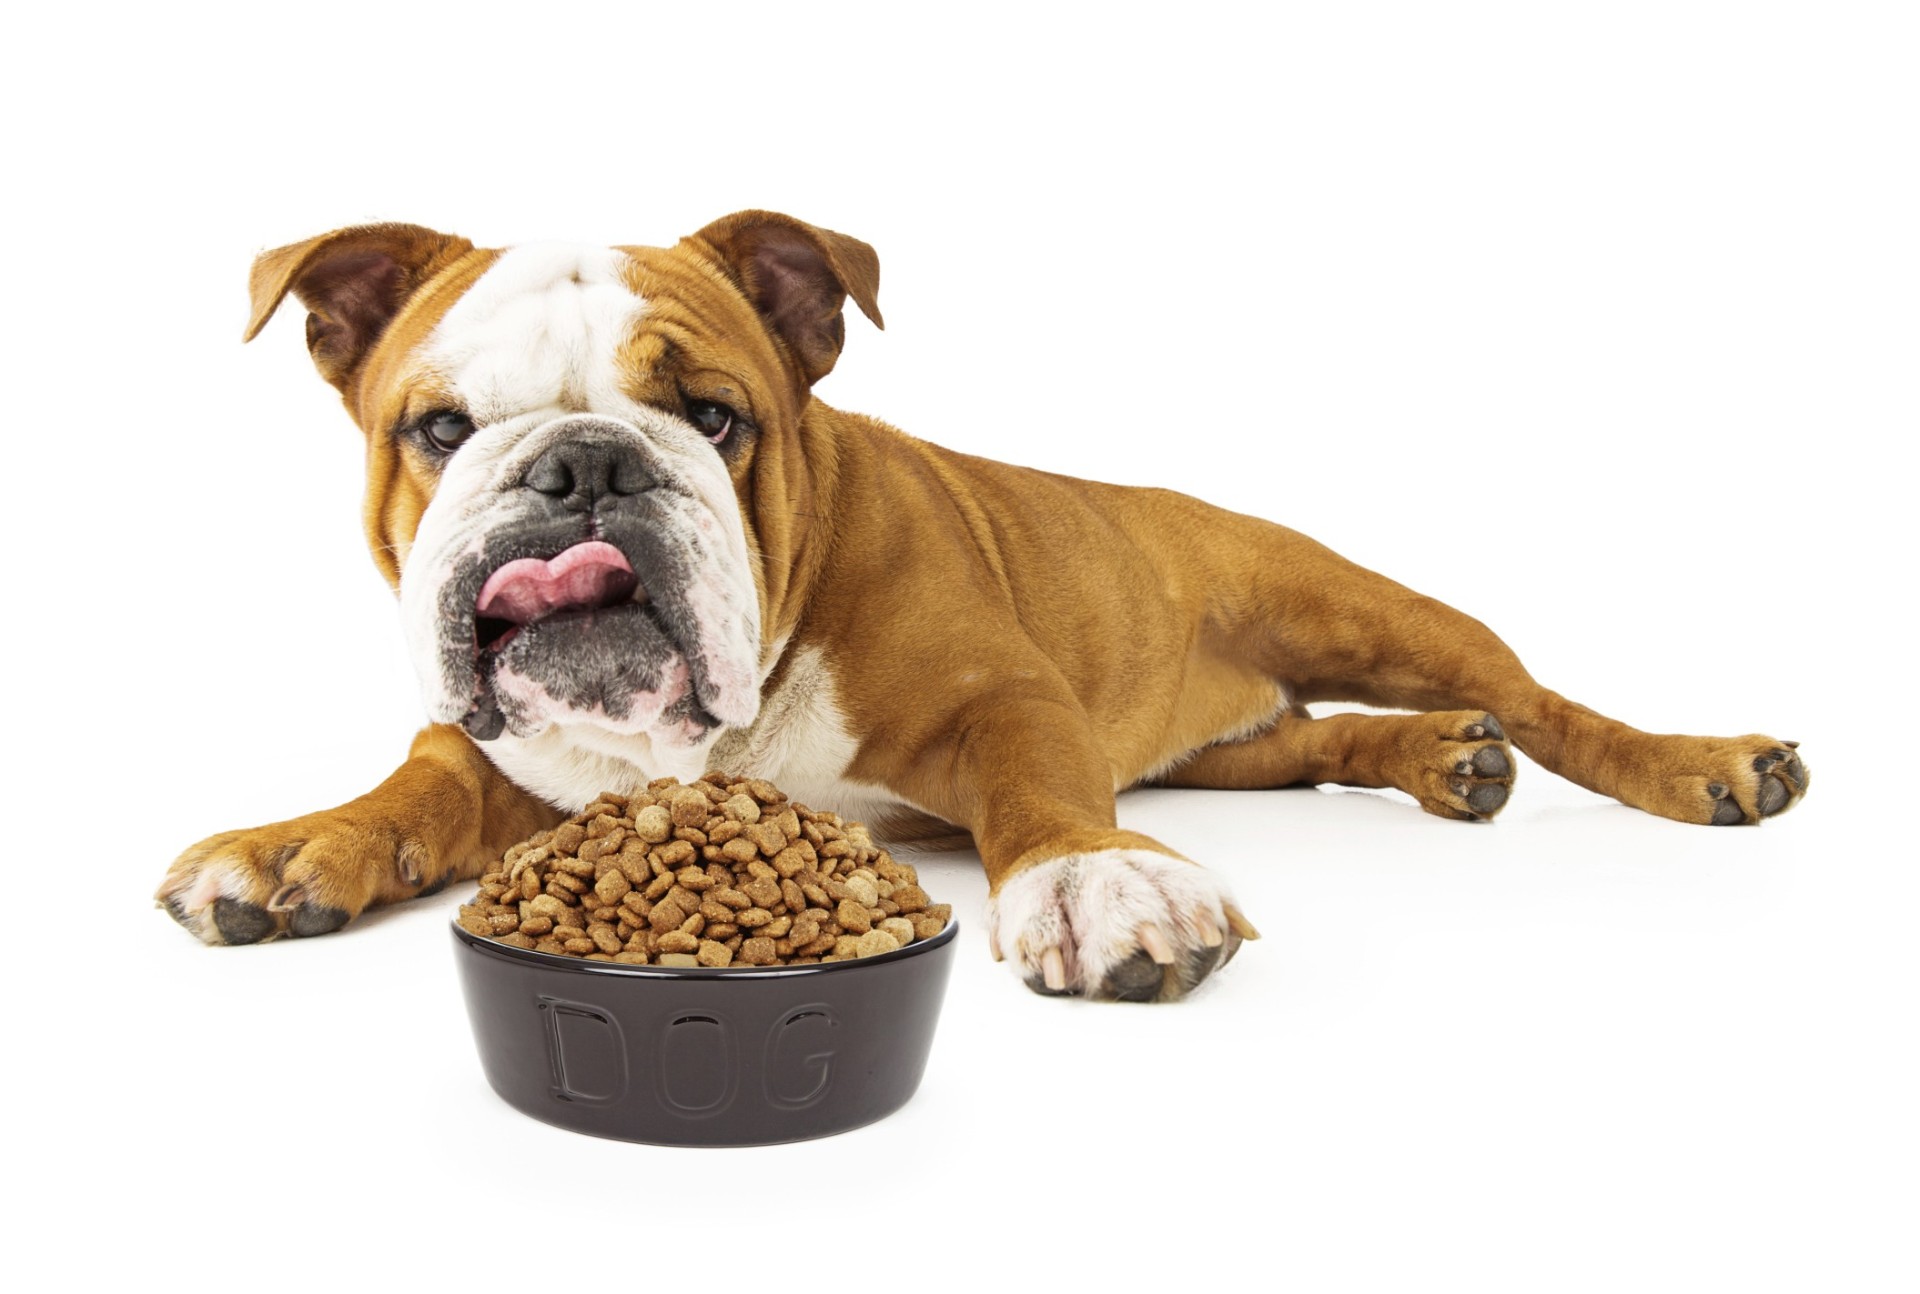 3 mitos na alimentação de pets: saiba se já cometeu algum deles